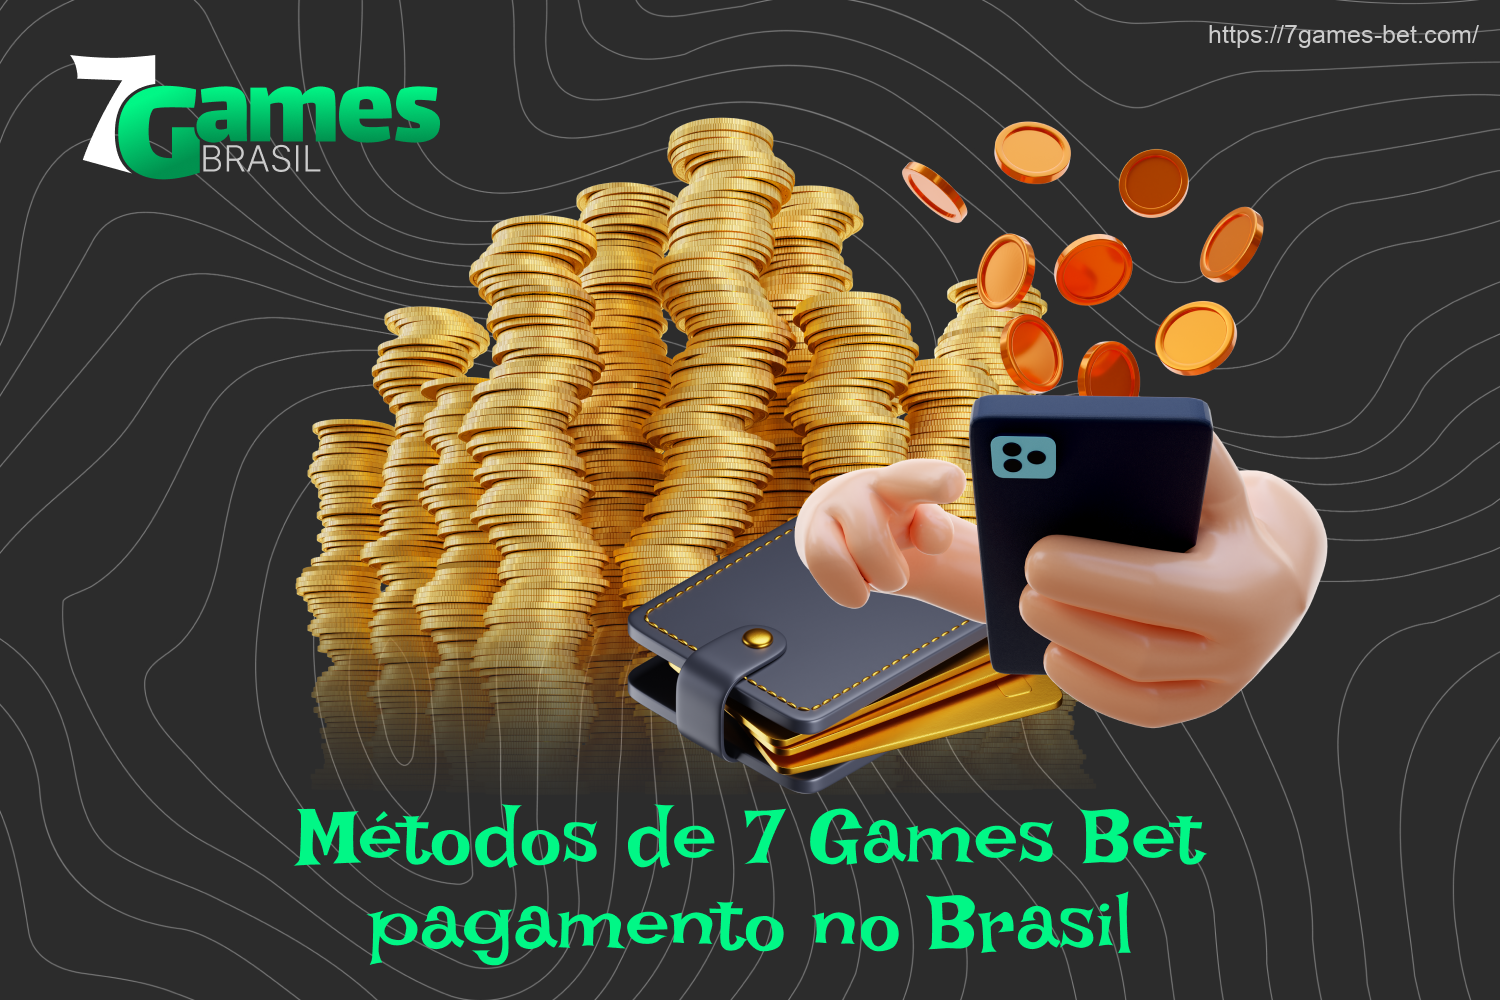 O 7Games é um site licenciado onde os brasileiros podem não apenas fazer apostas, mas também efetuar pagamentos e sacar seus ganhos de forma rápida e segura